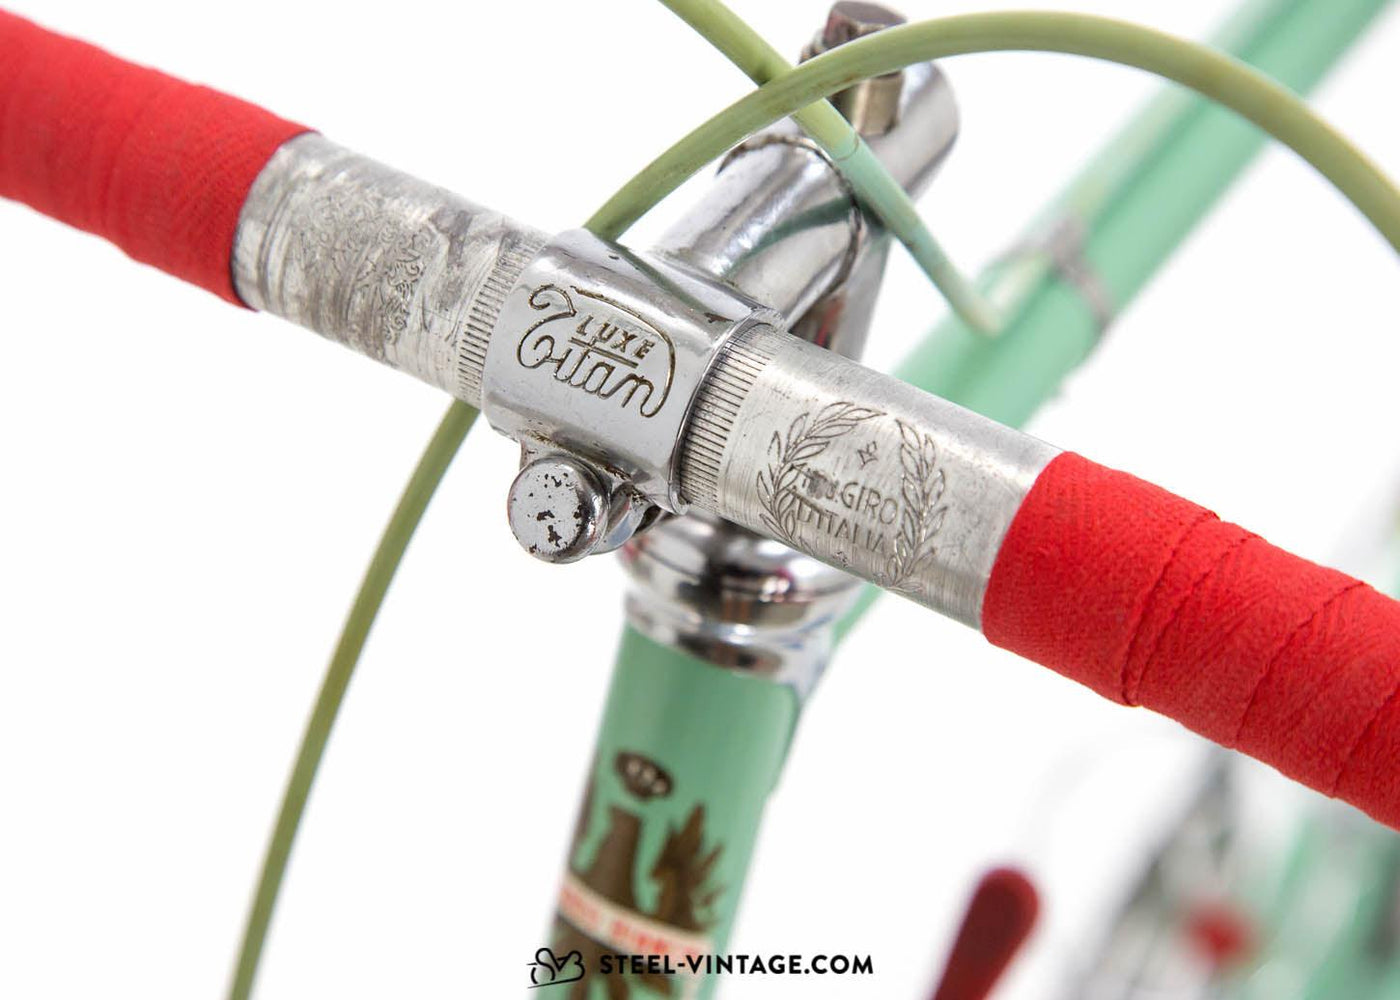 Bianchi Campione del Mondo Classic Road Bike 1950s - Steel Vintage Bikes